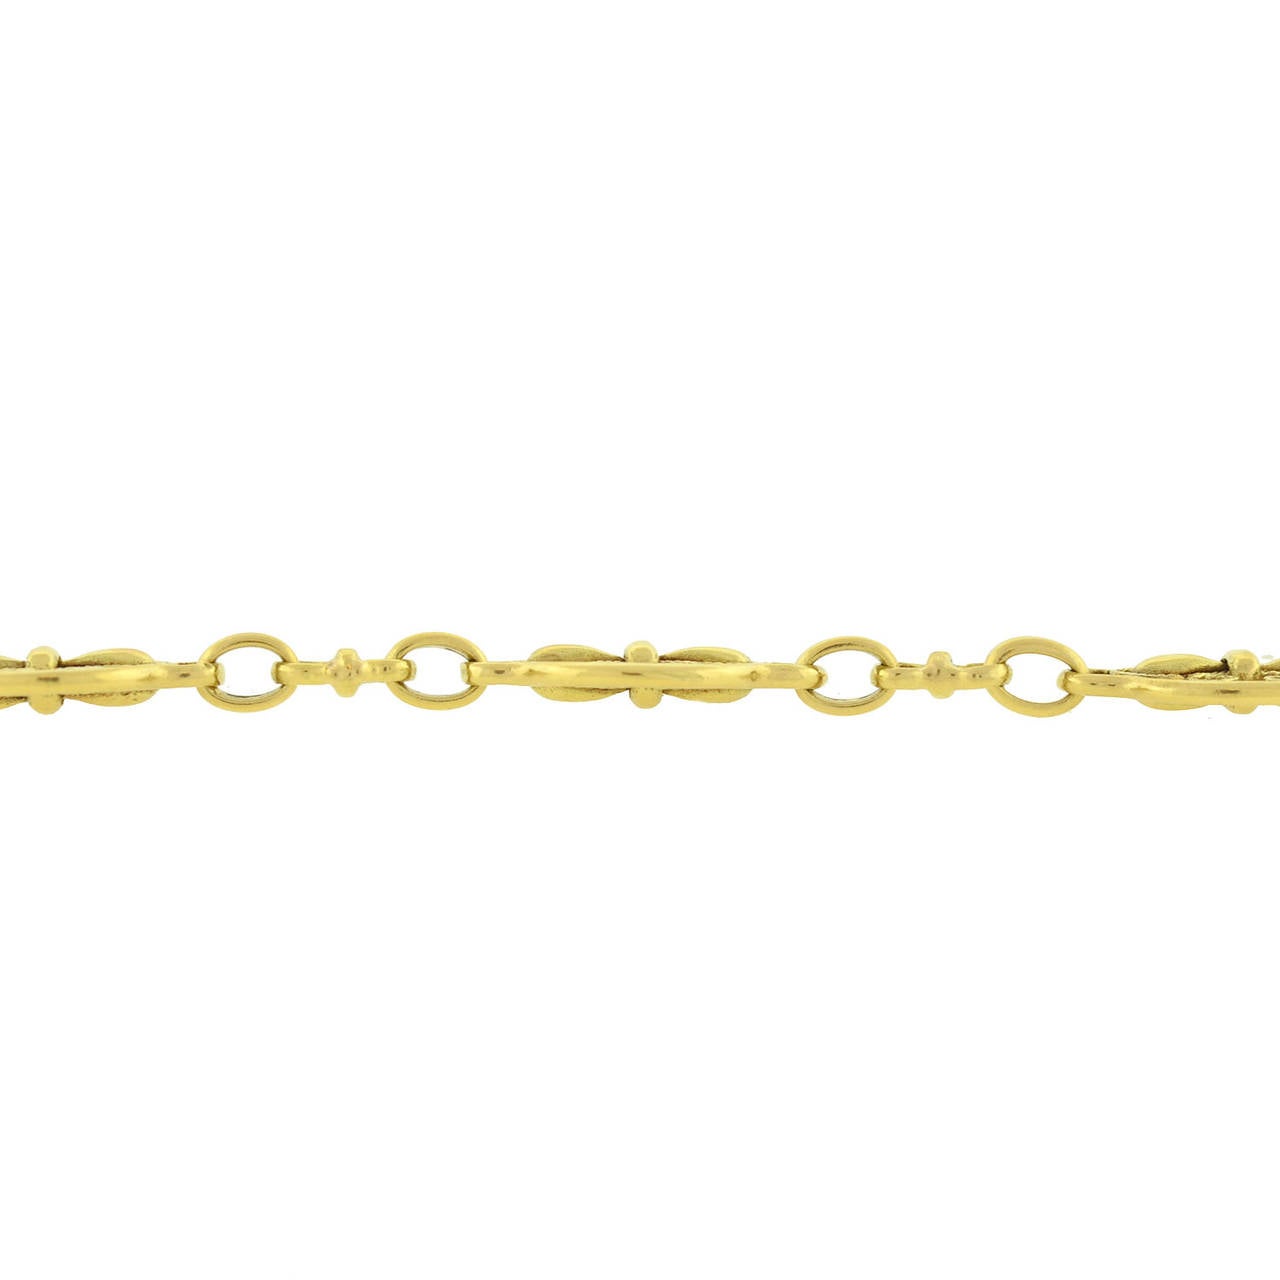 Art Nouveau French Ornate Fleur de Lys Motif Gold Chain 1